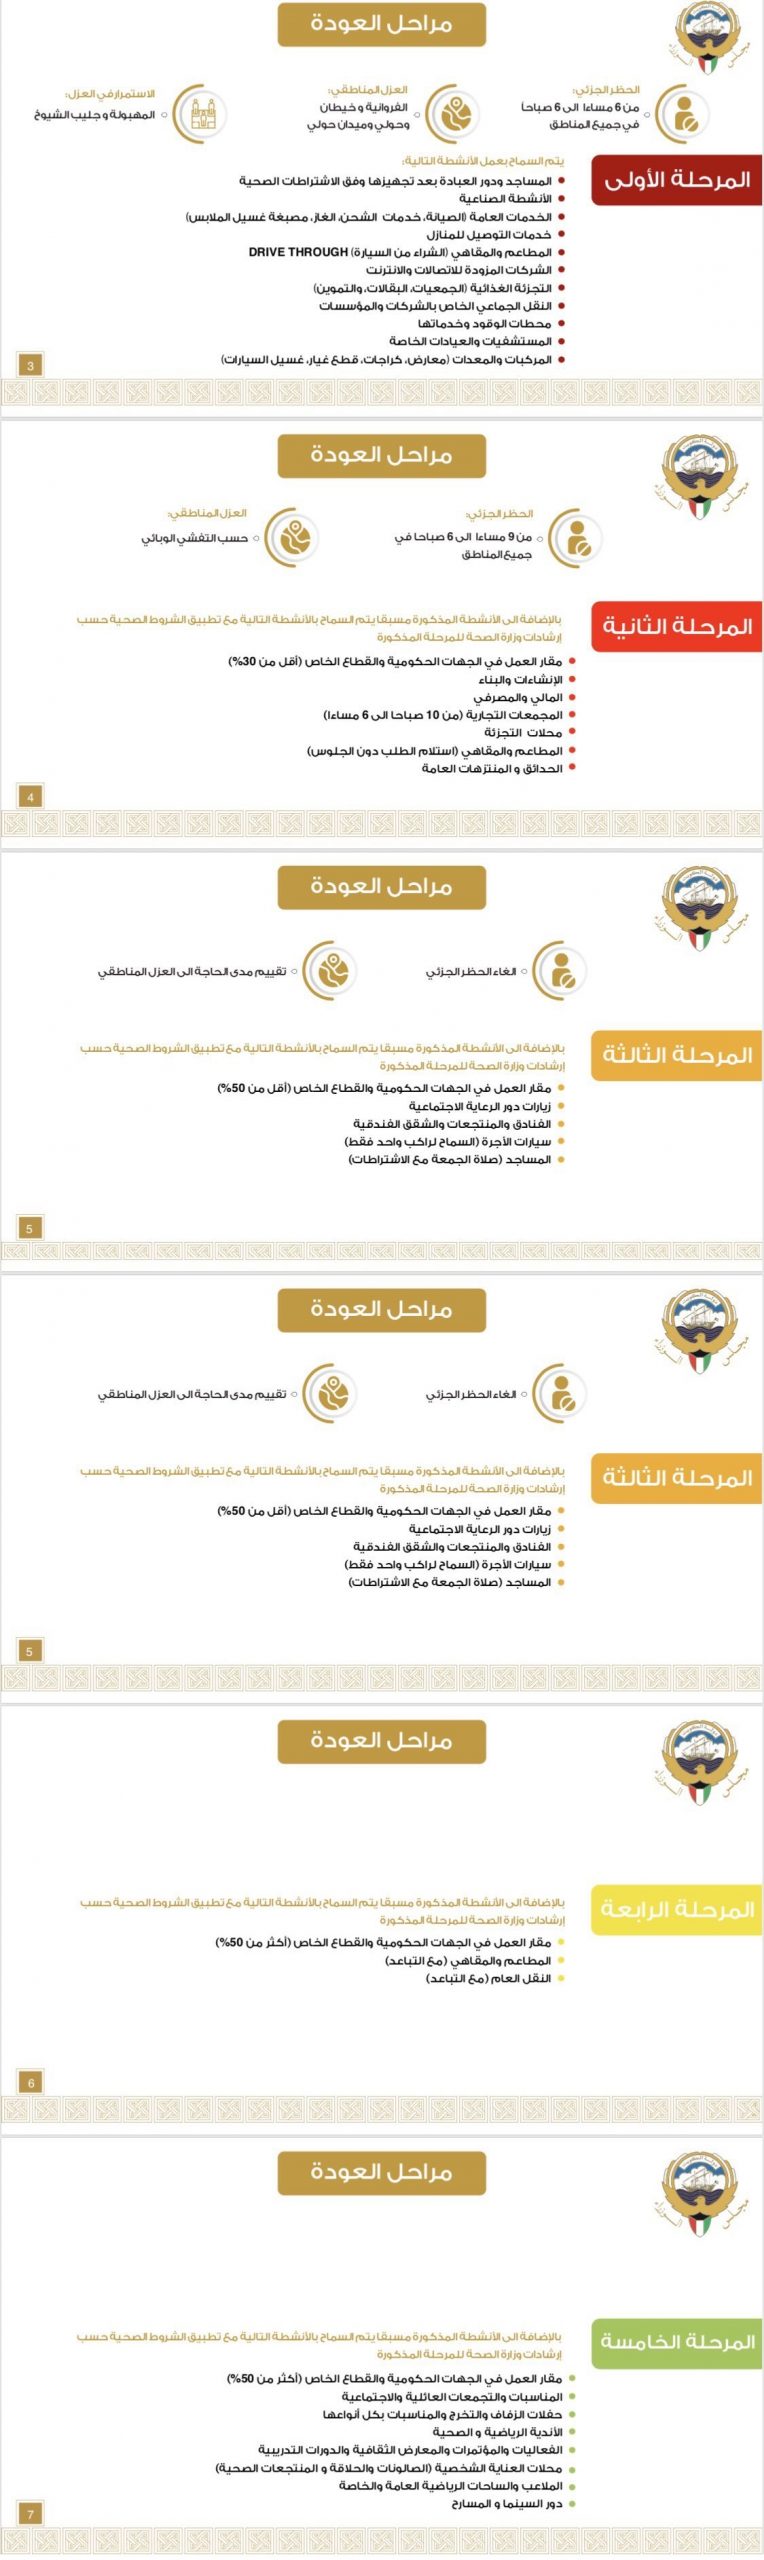 جدول المراحل الخمس في الكويت